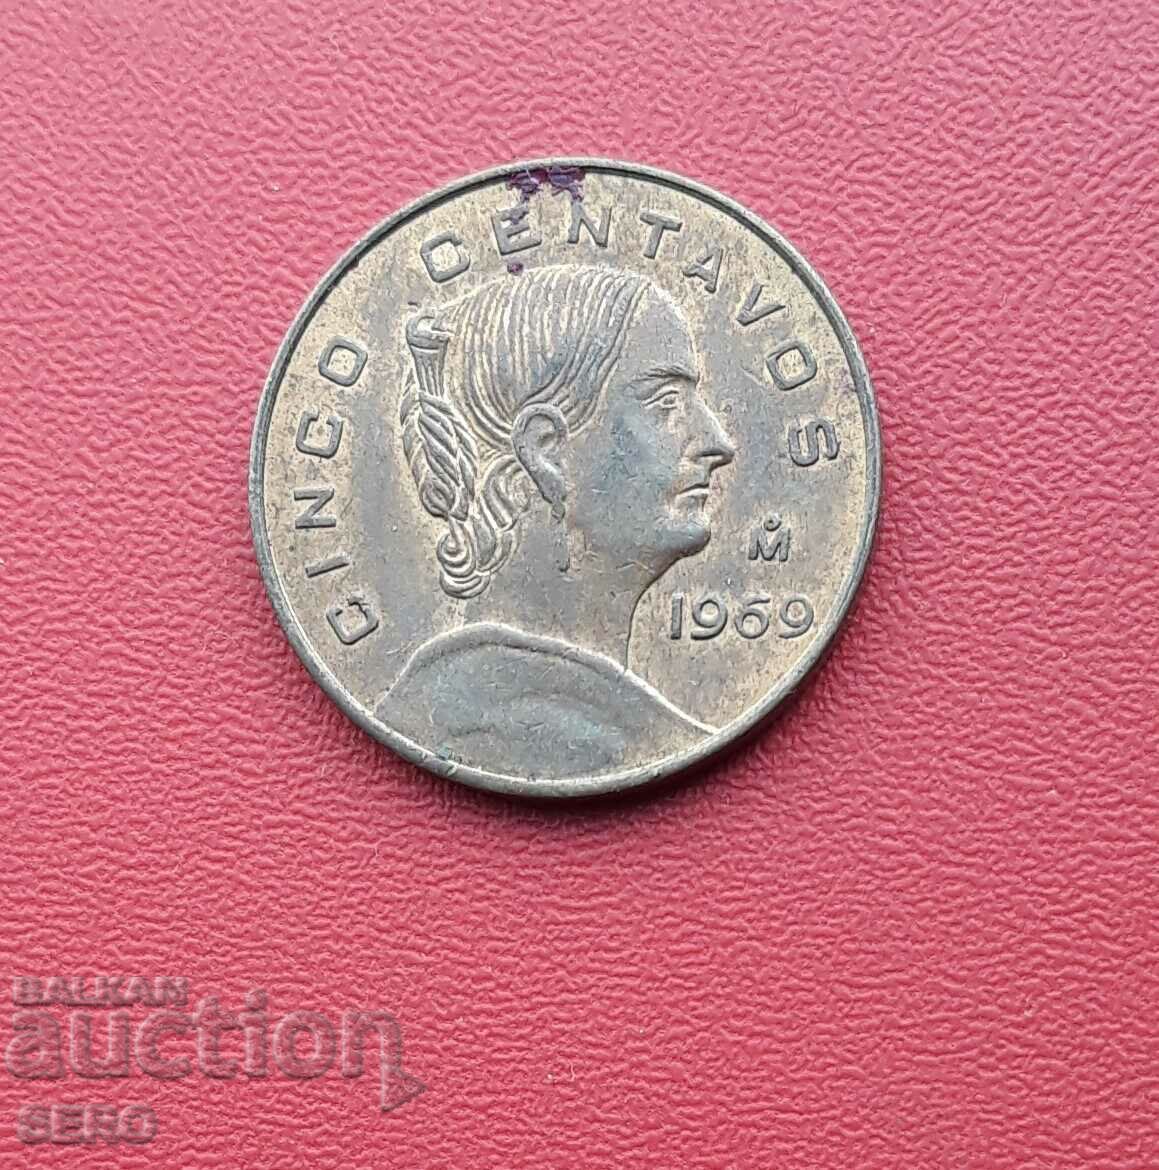 Μεξικό-5 centavos 1969